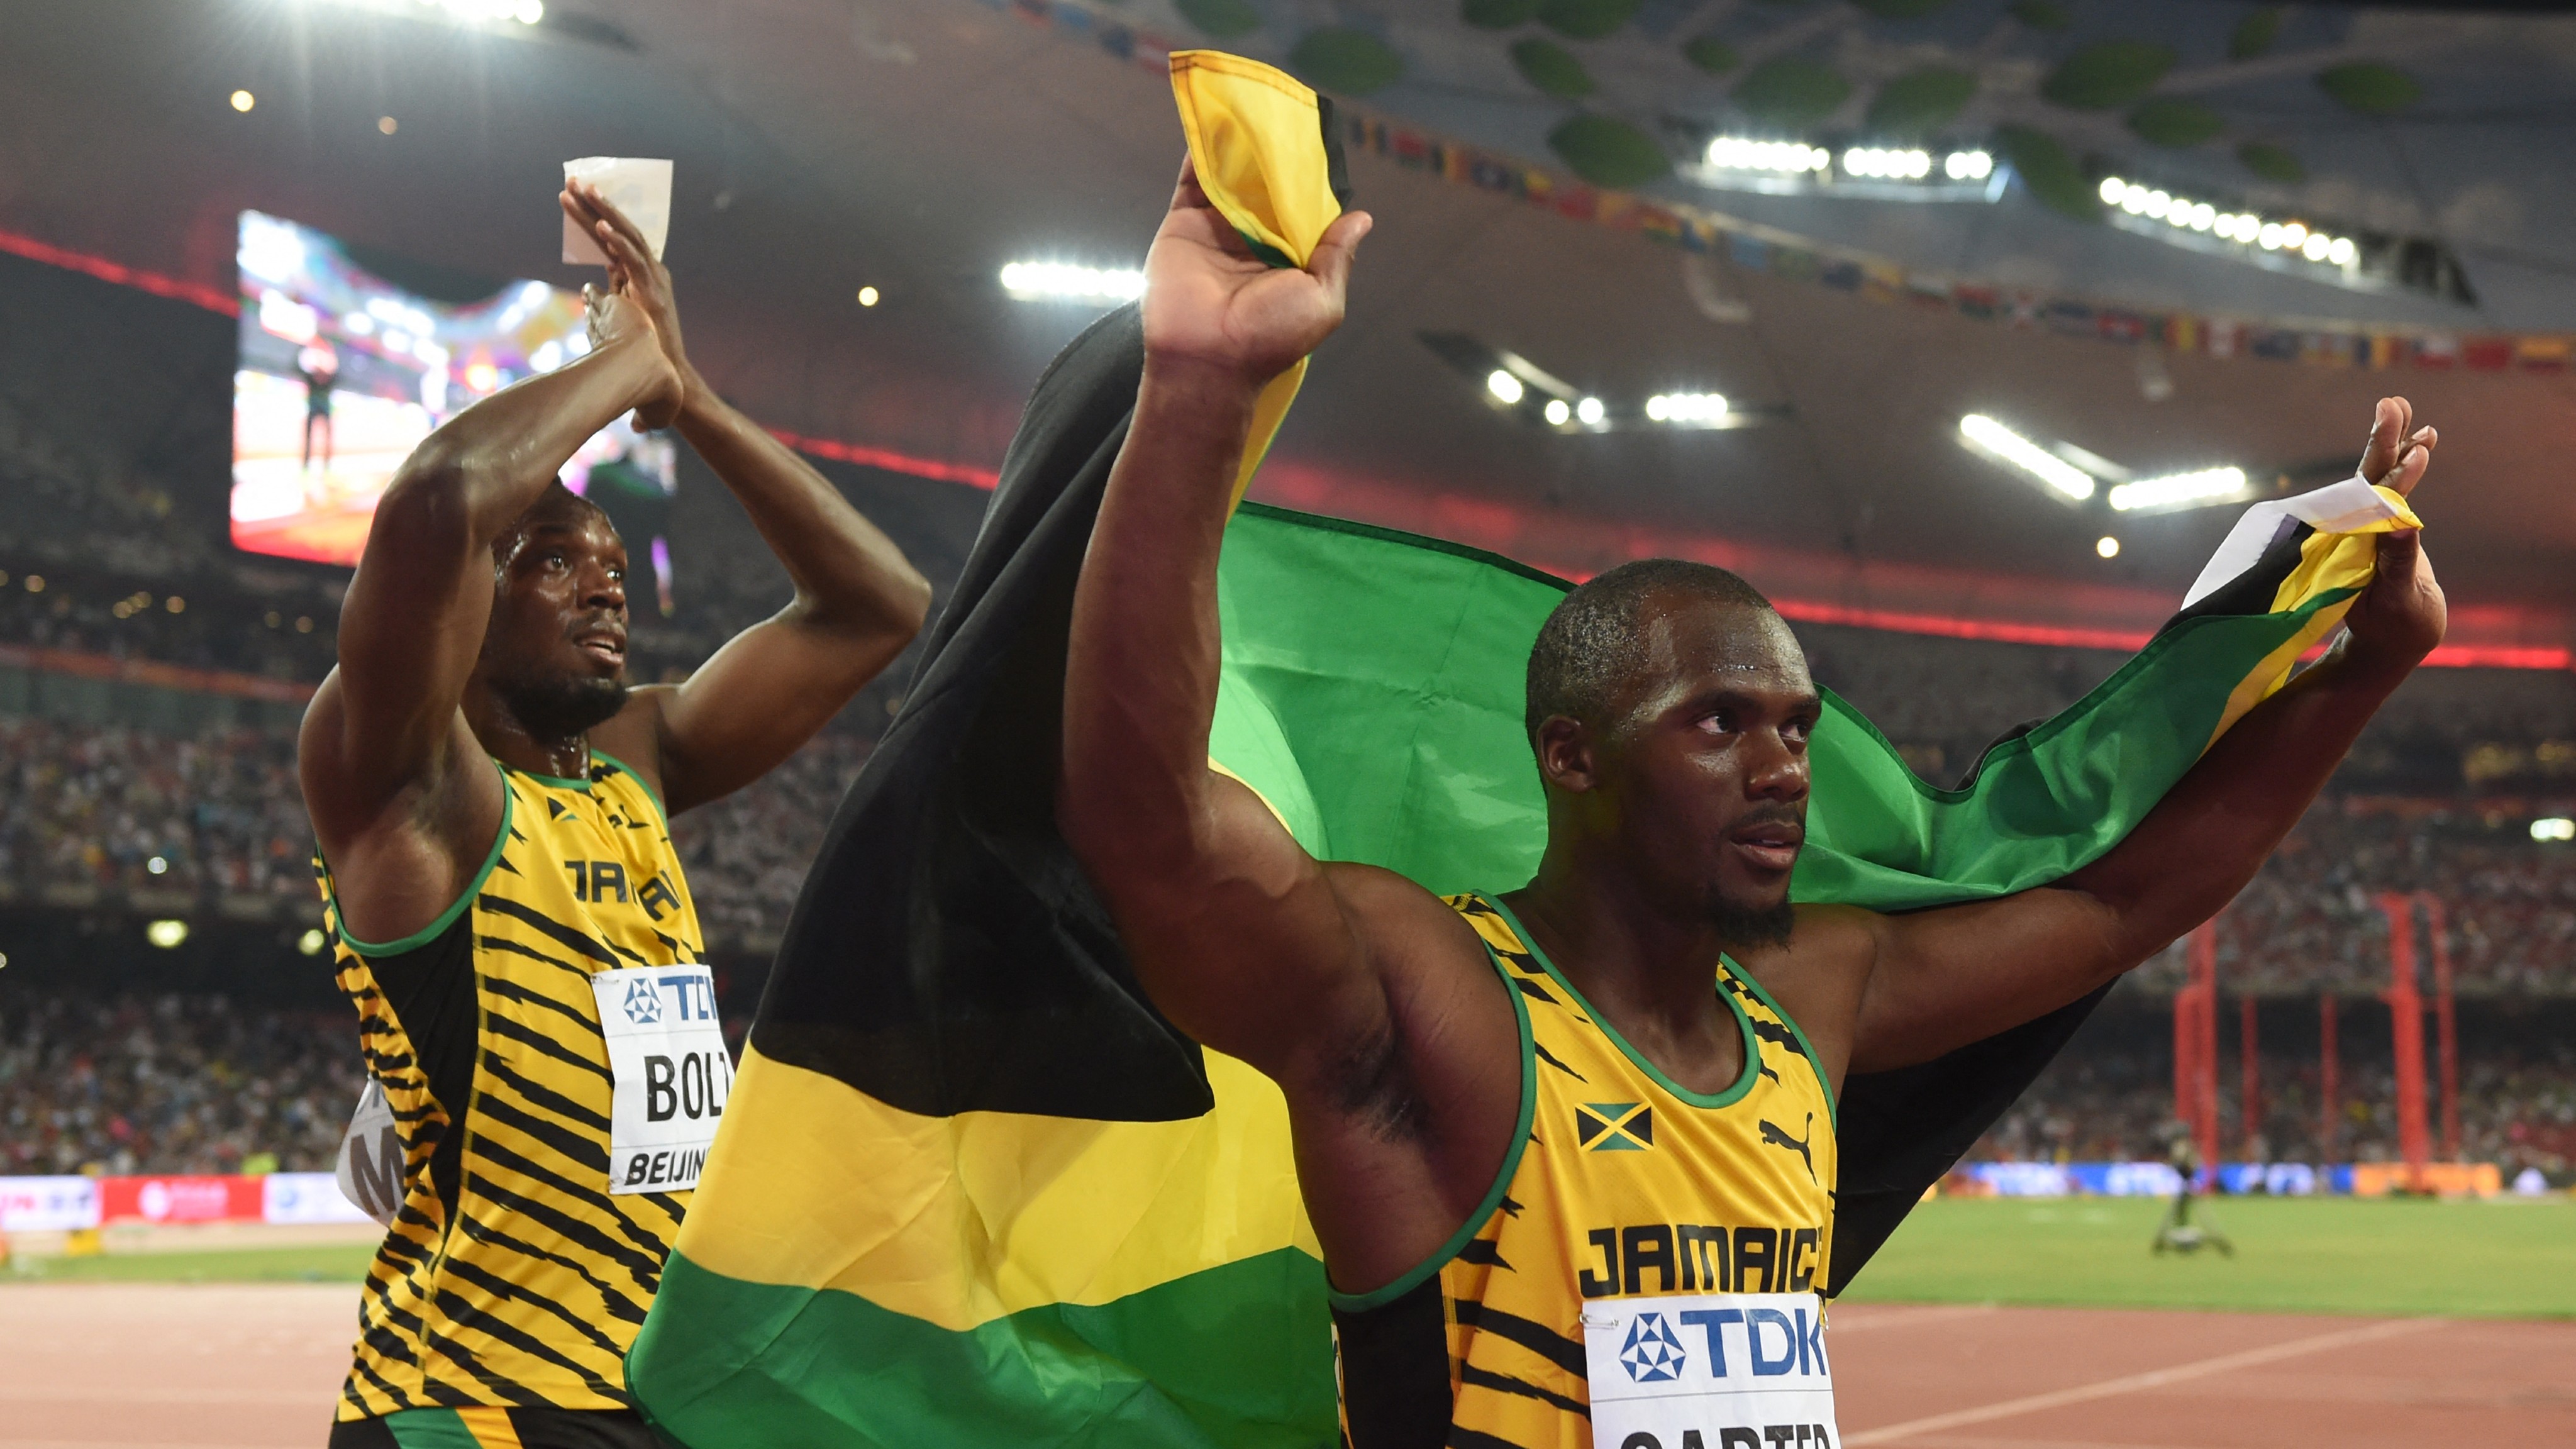 Megint doppingügybe keveredett a sprinter, aki miatt Usain Bolttól elvettek egy olimpiai aranyat